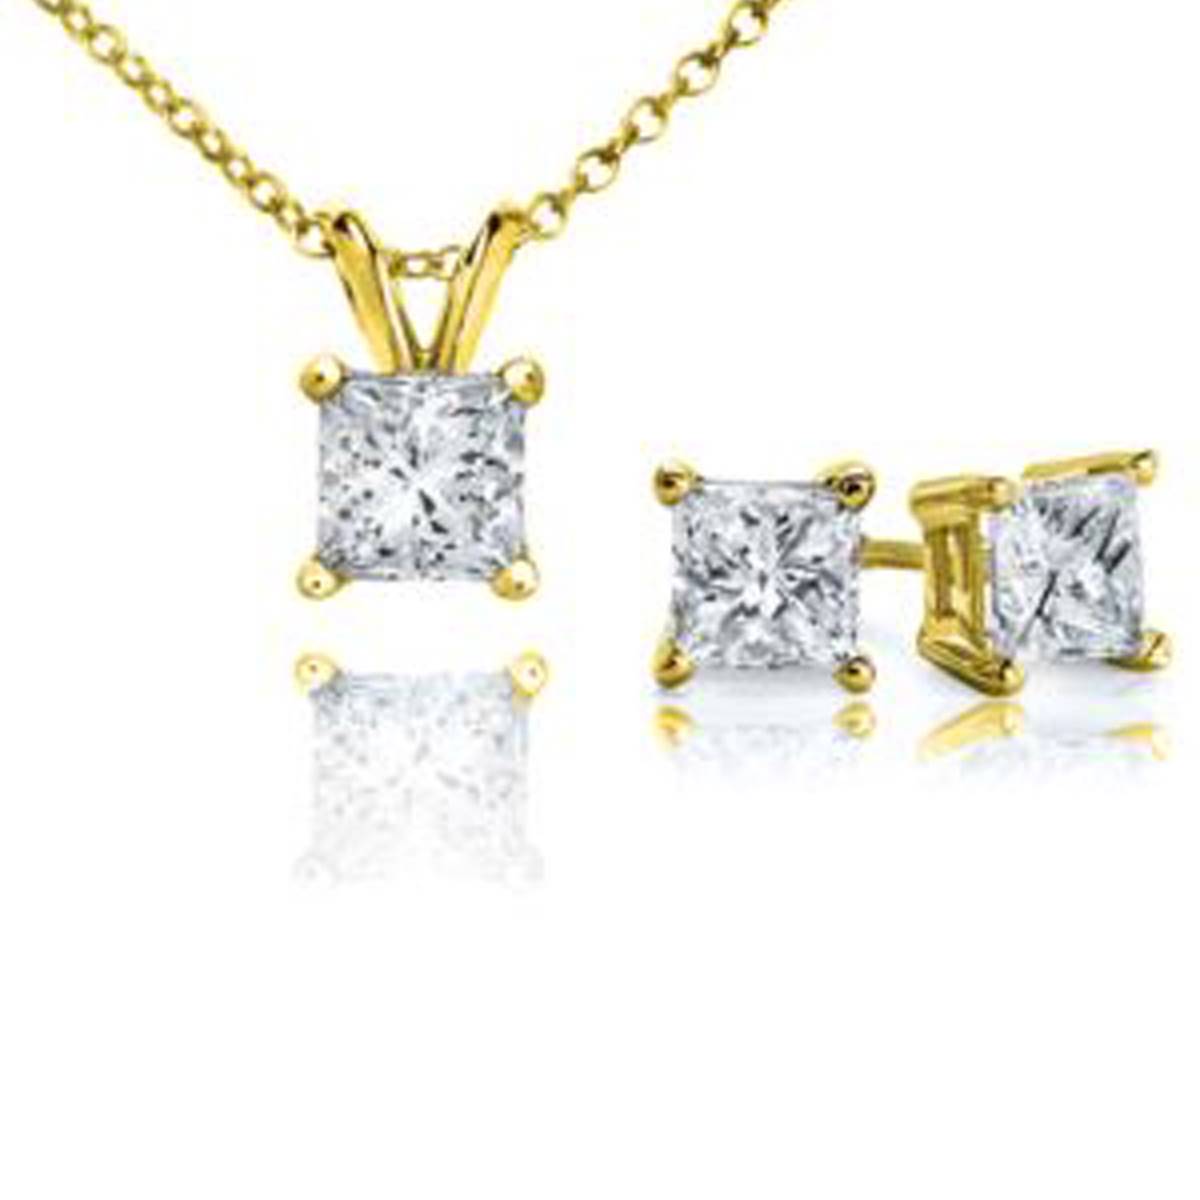 Parikhs 14kt. Yellow Gold Princess Cut Diamond Set